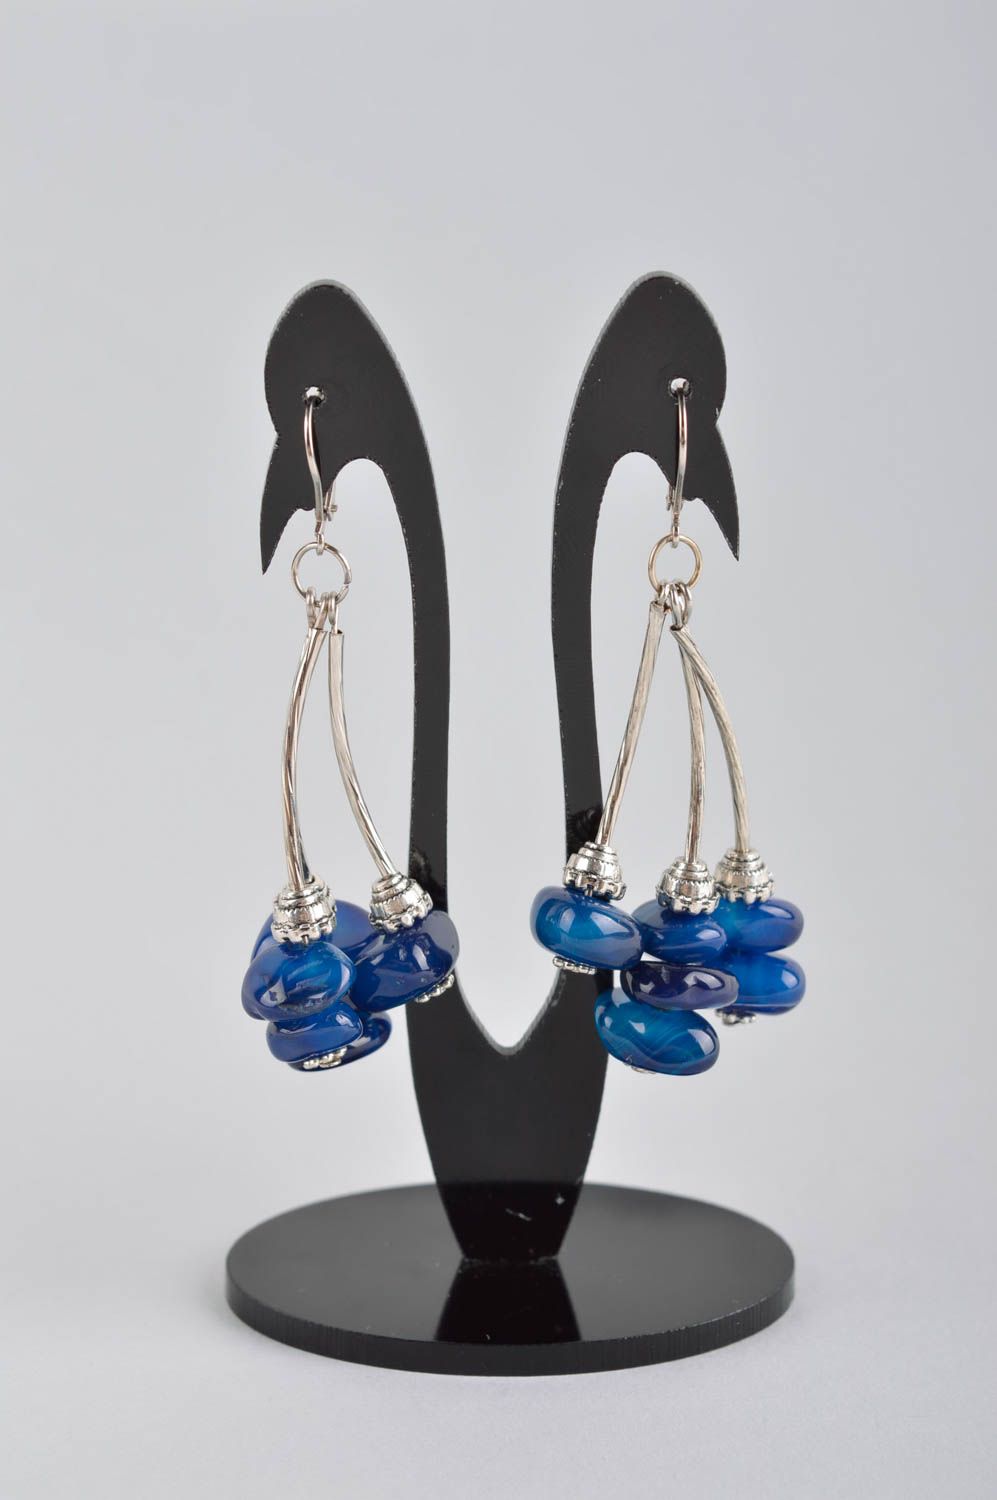 Long earrings handmade jewelry earrings for women stylish earrings gifts for her photo 2